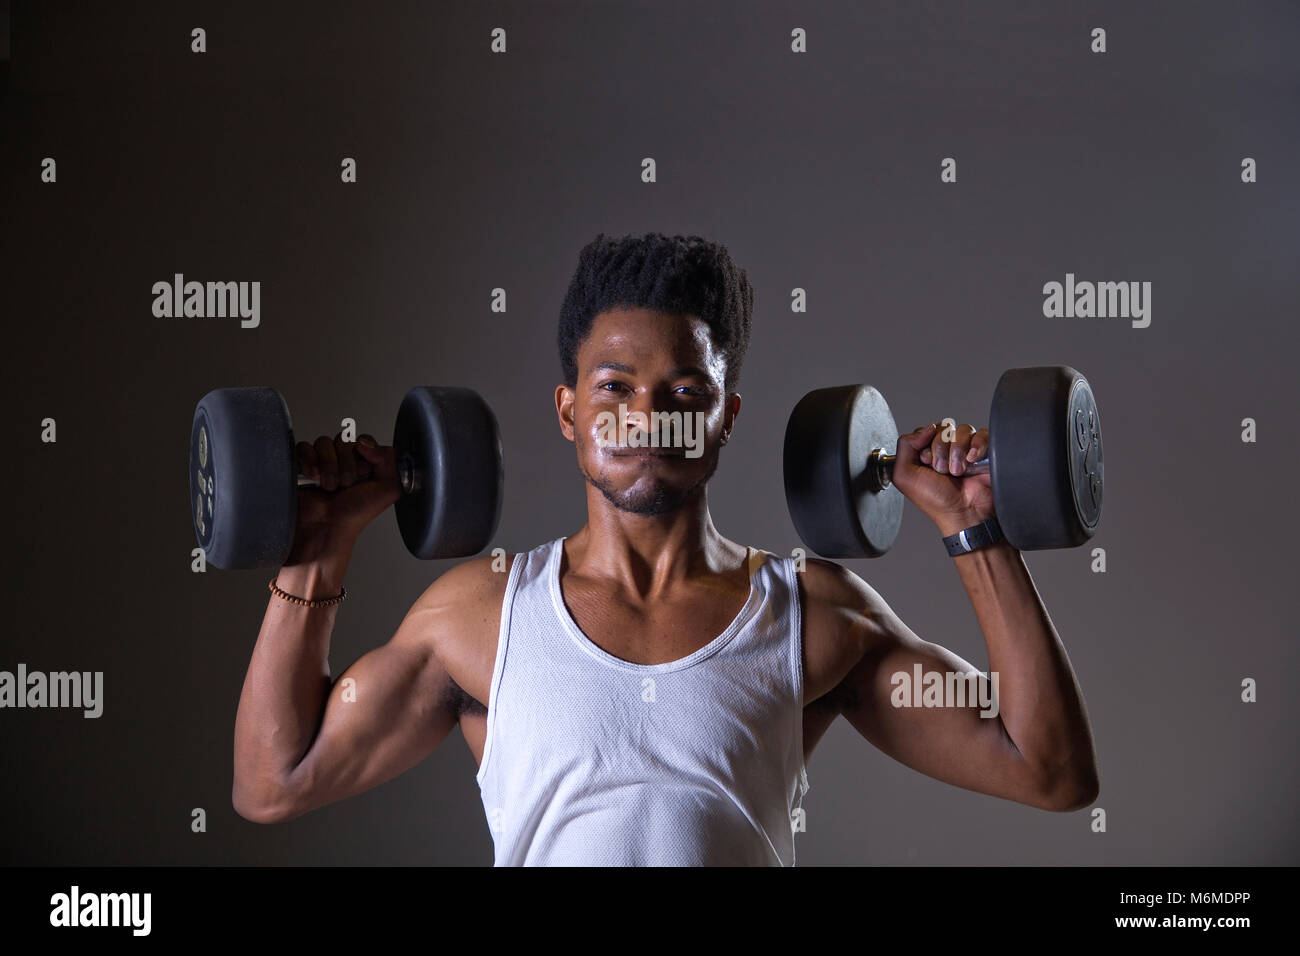 Athlète africain lever des poids dans une salle de sport Banque D'Images